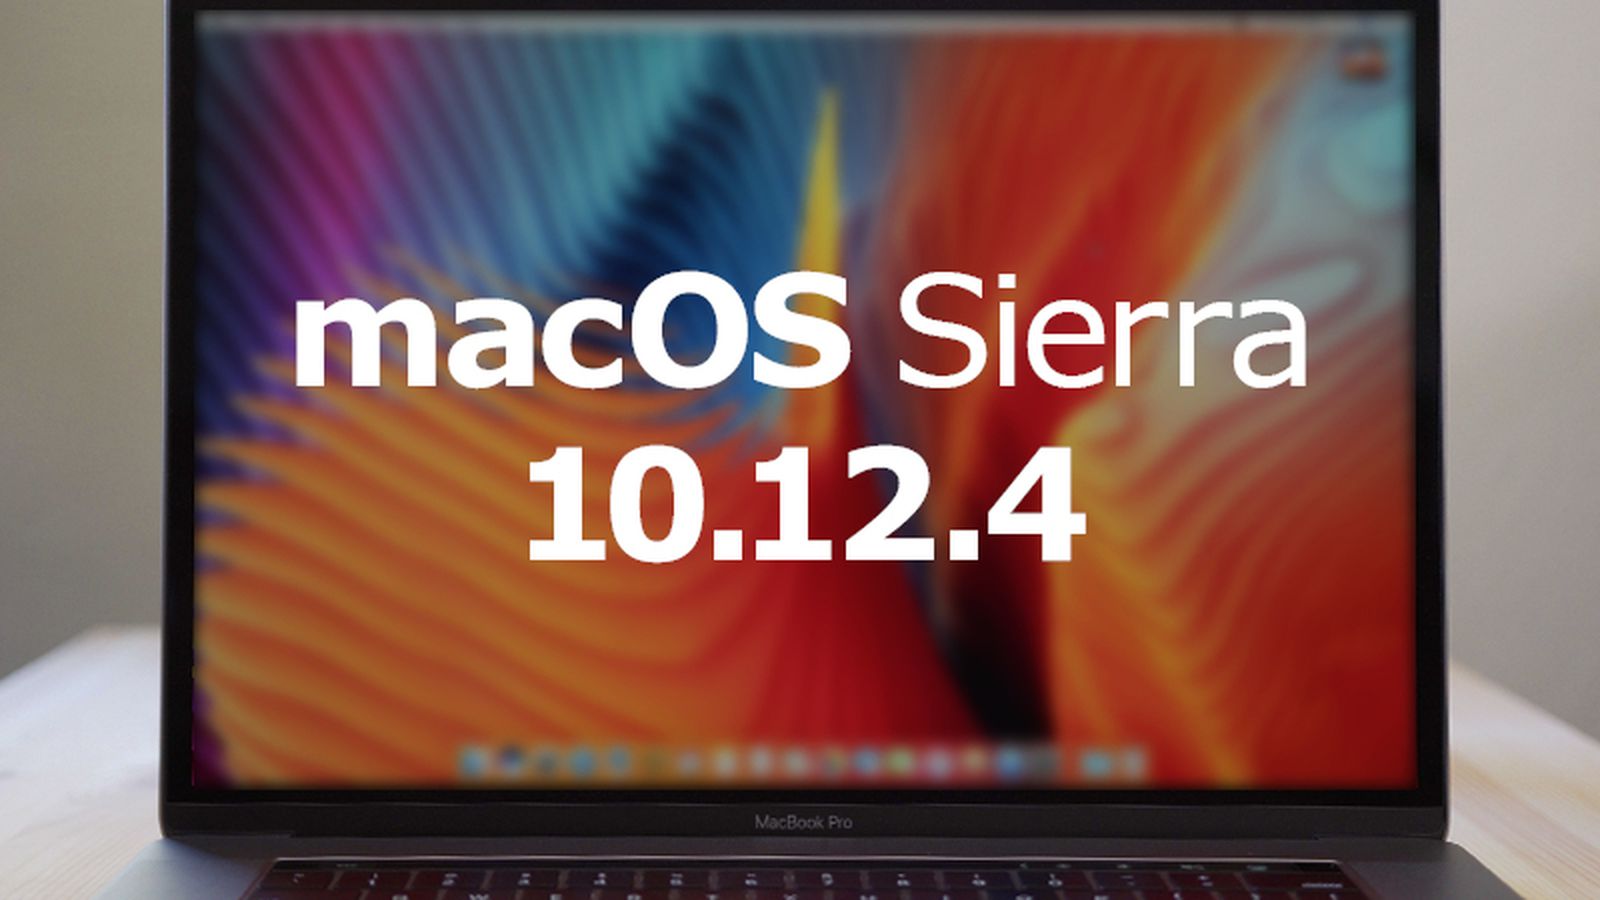 macos sierra 10.12 0 download